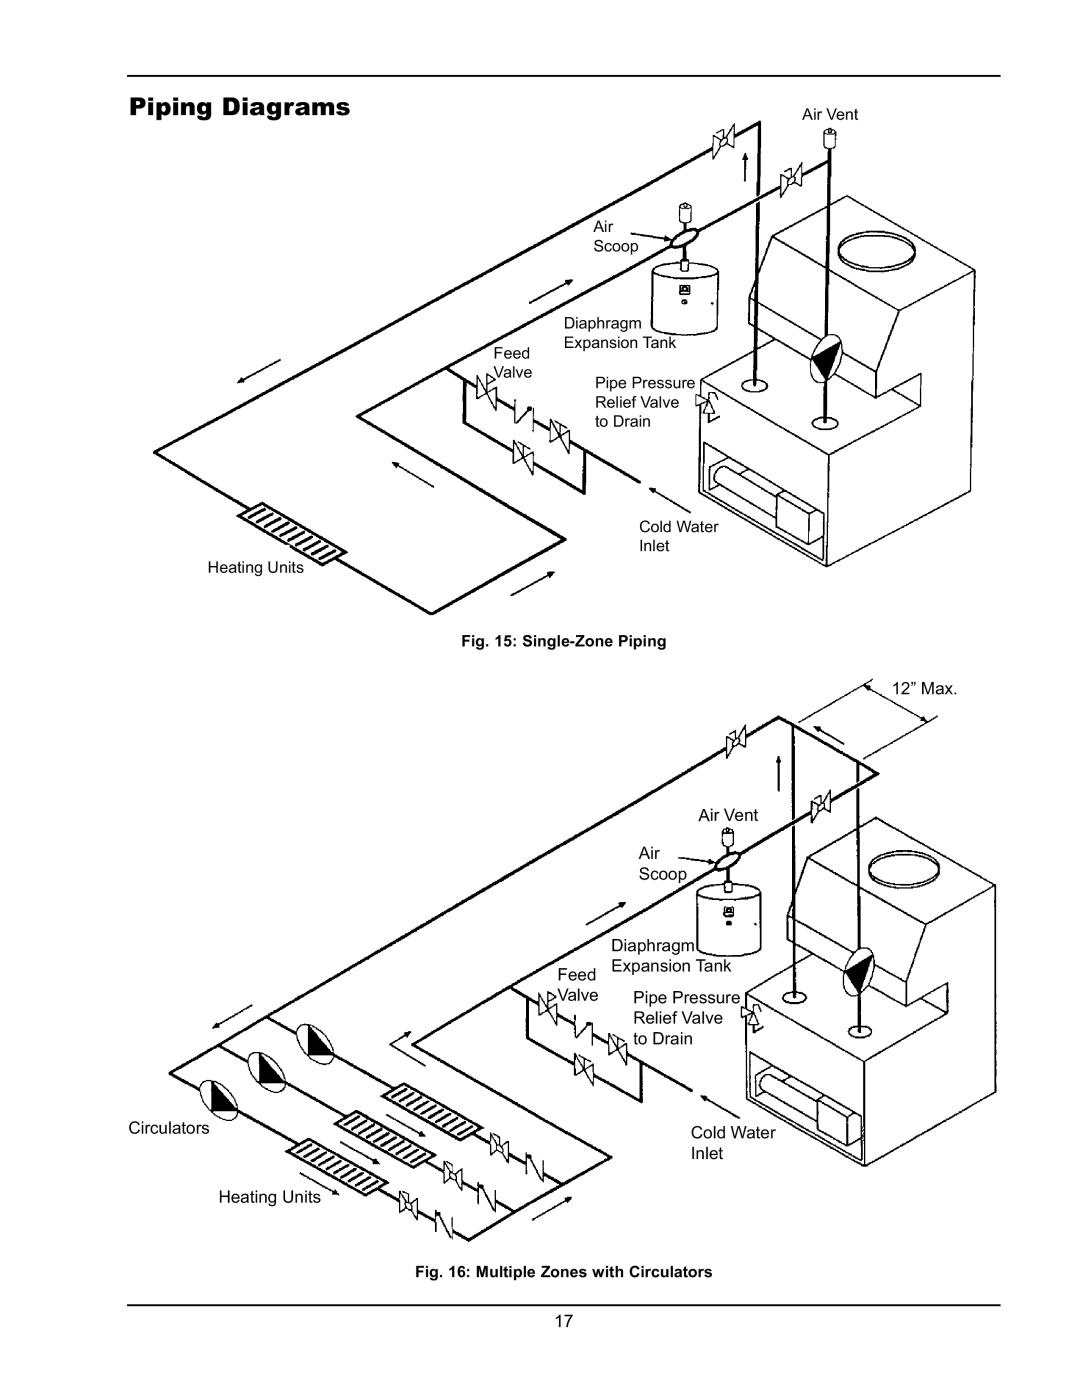 Raypak 0042B Piping Diagrams, 12” Max Air Vent Air Scoop Diaphragm, Feed Expansion Tank Valve Pipe Pressure, Circulators 